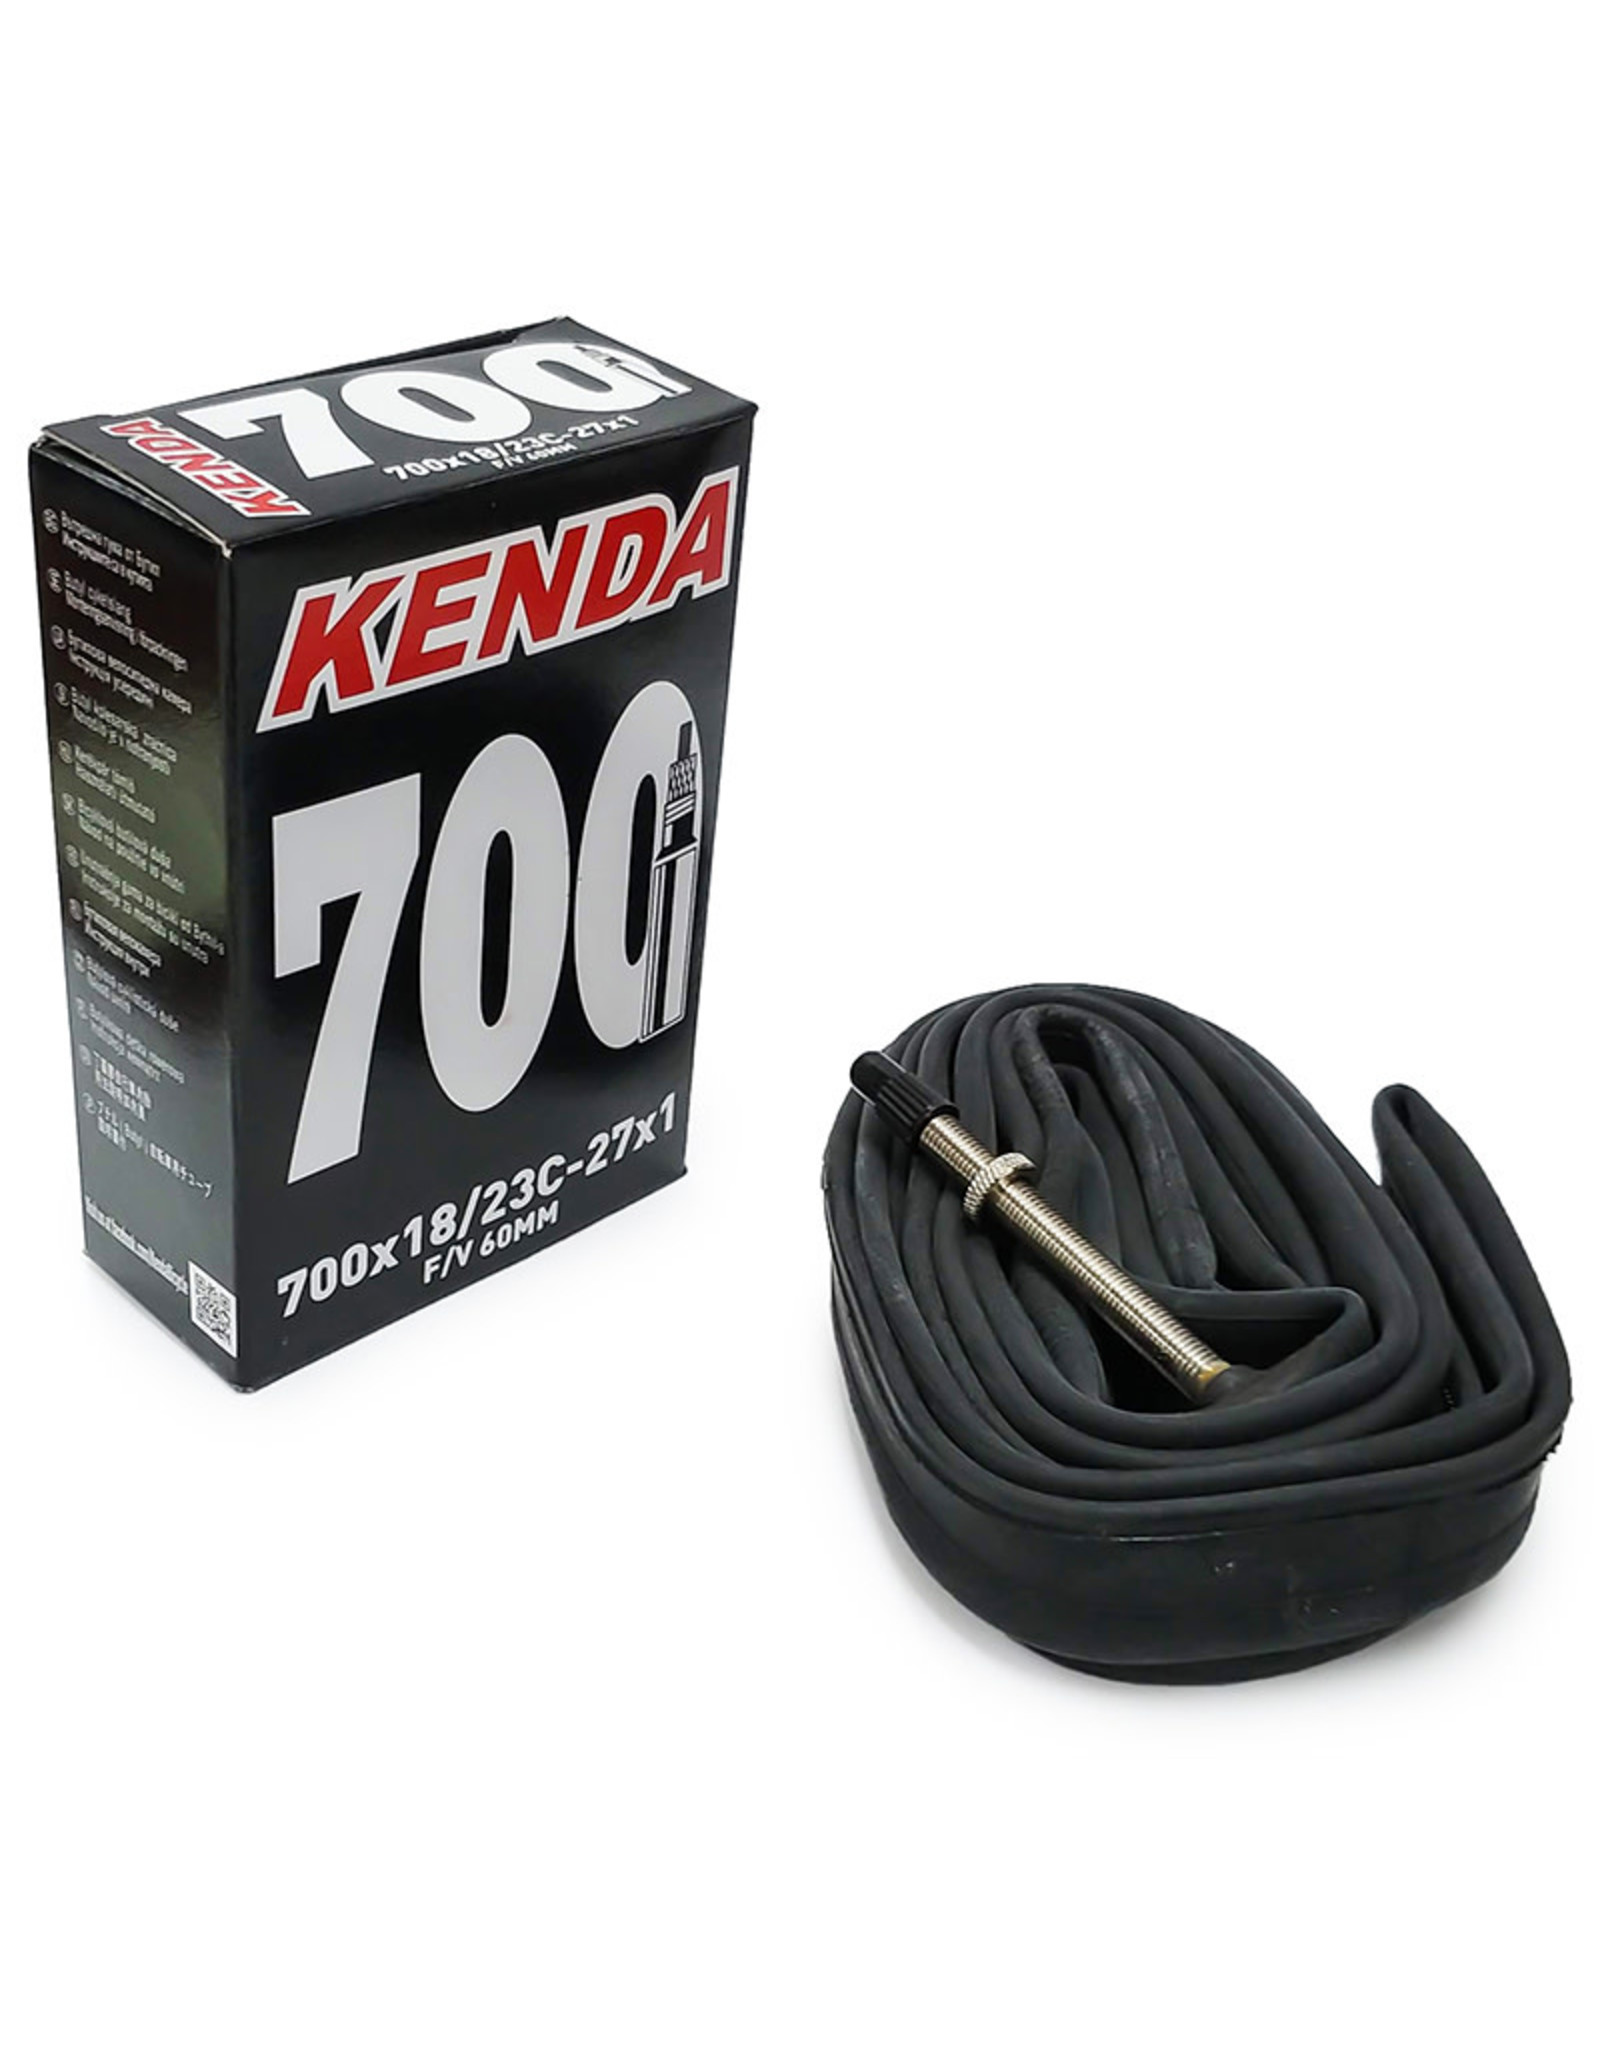 Kenda 700X18-23 60mm inner tube